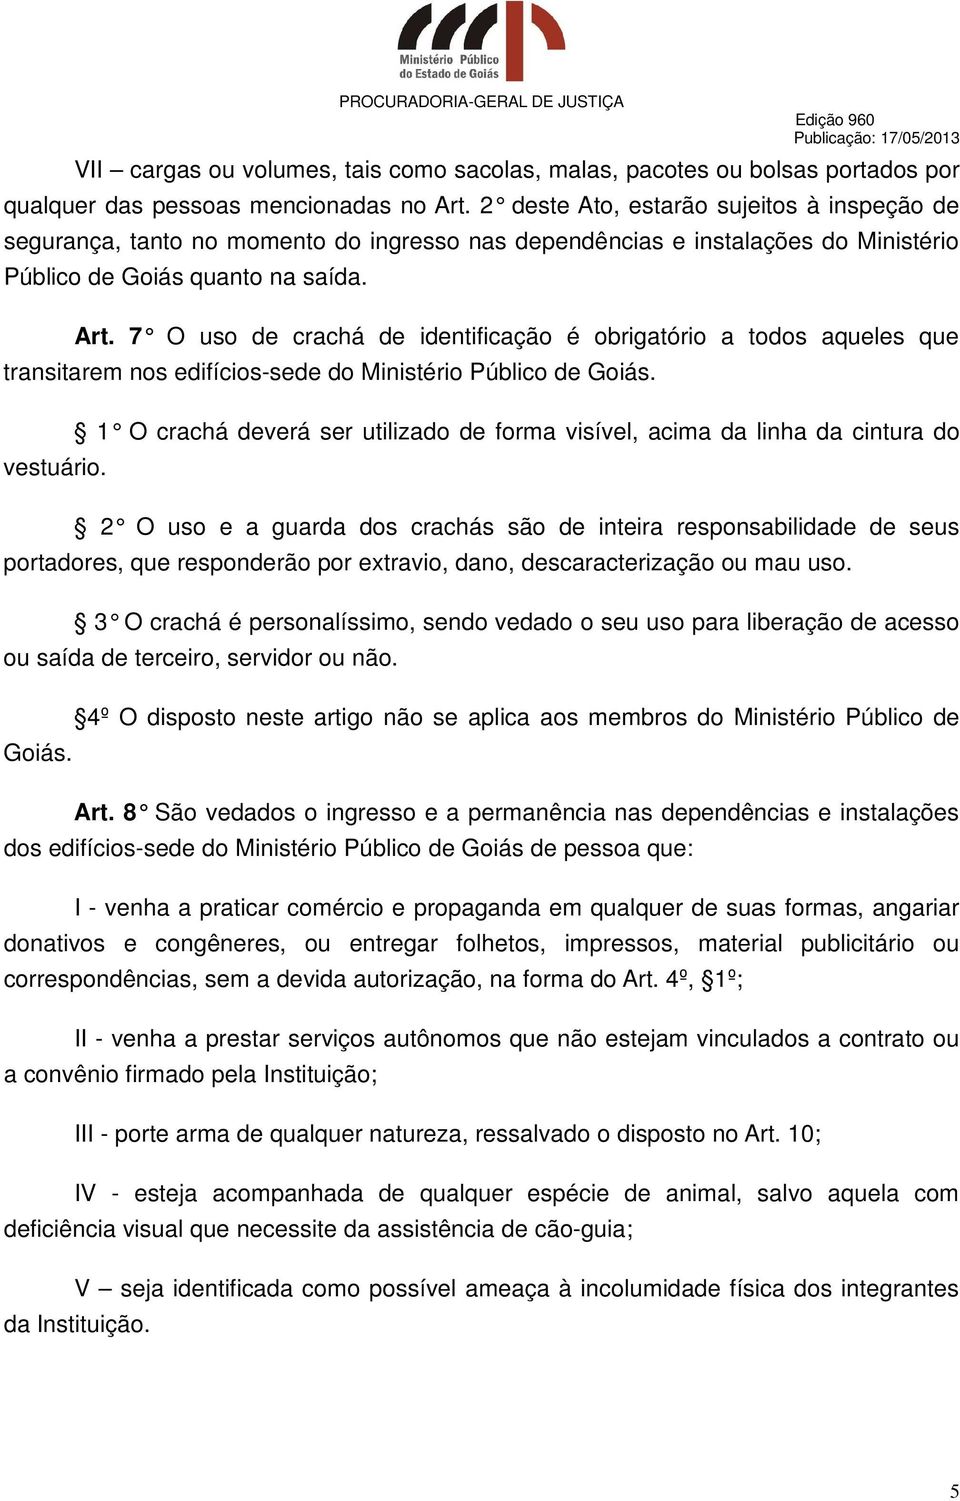 7 O uso de crachá de identificação é obrigatório a todos aqueles que transitarem nos edifícios-sede do Ministério Público de Goiás.